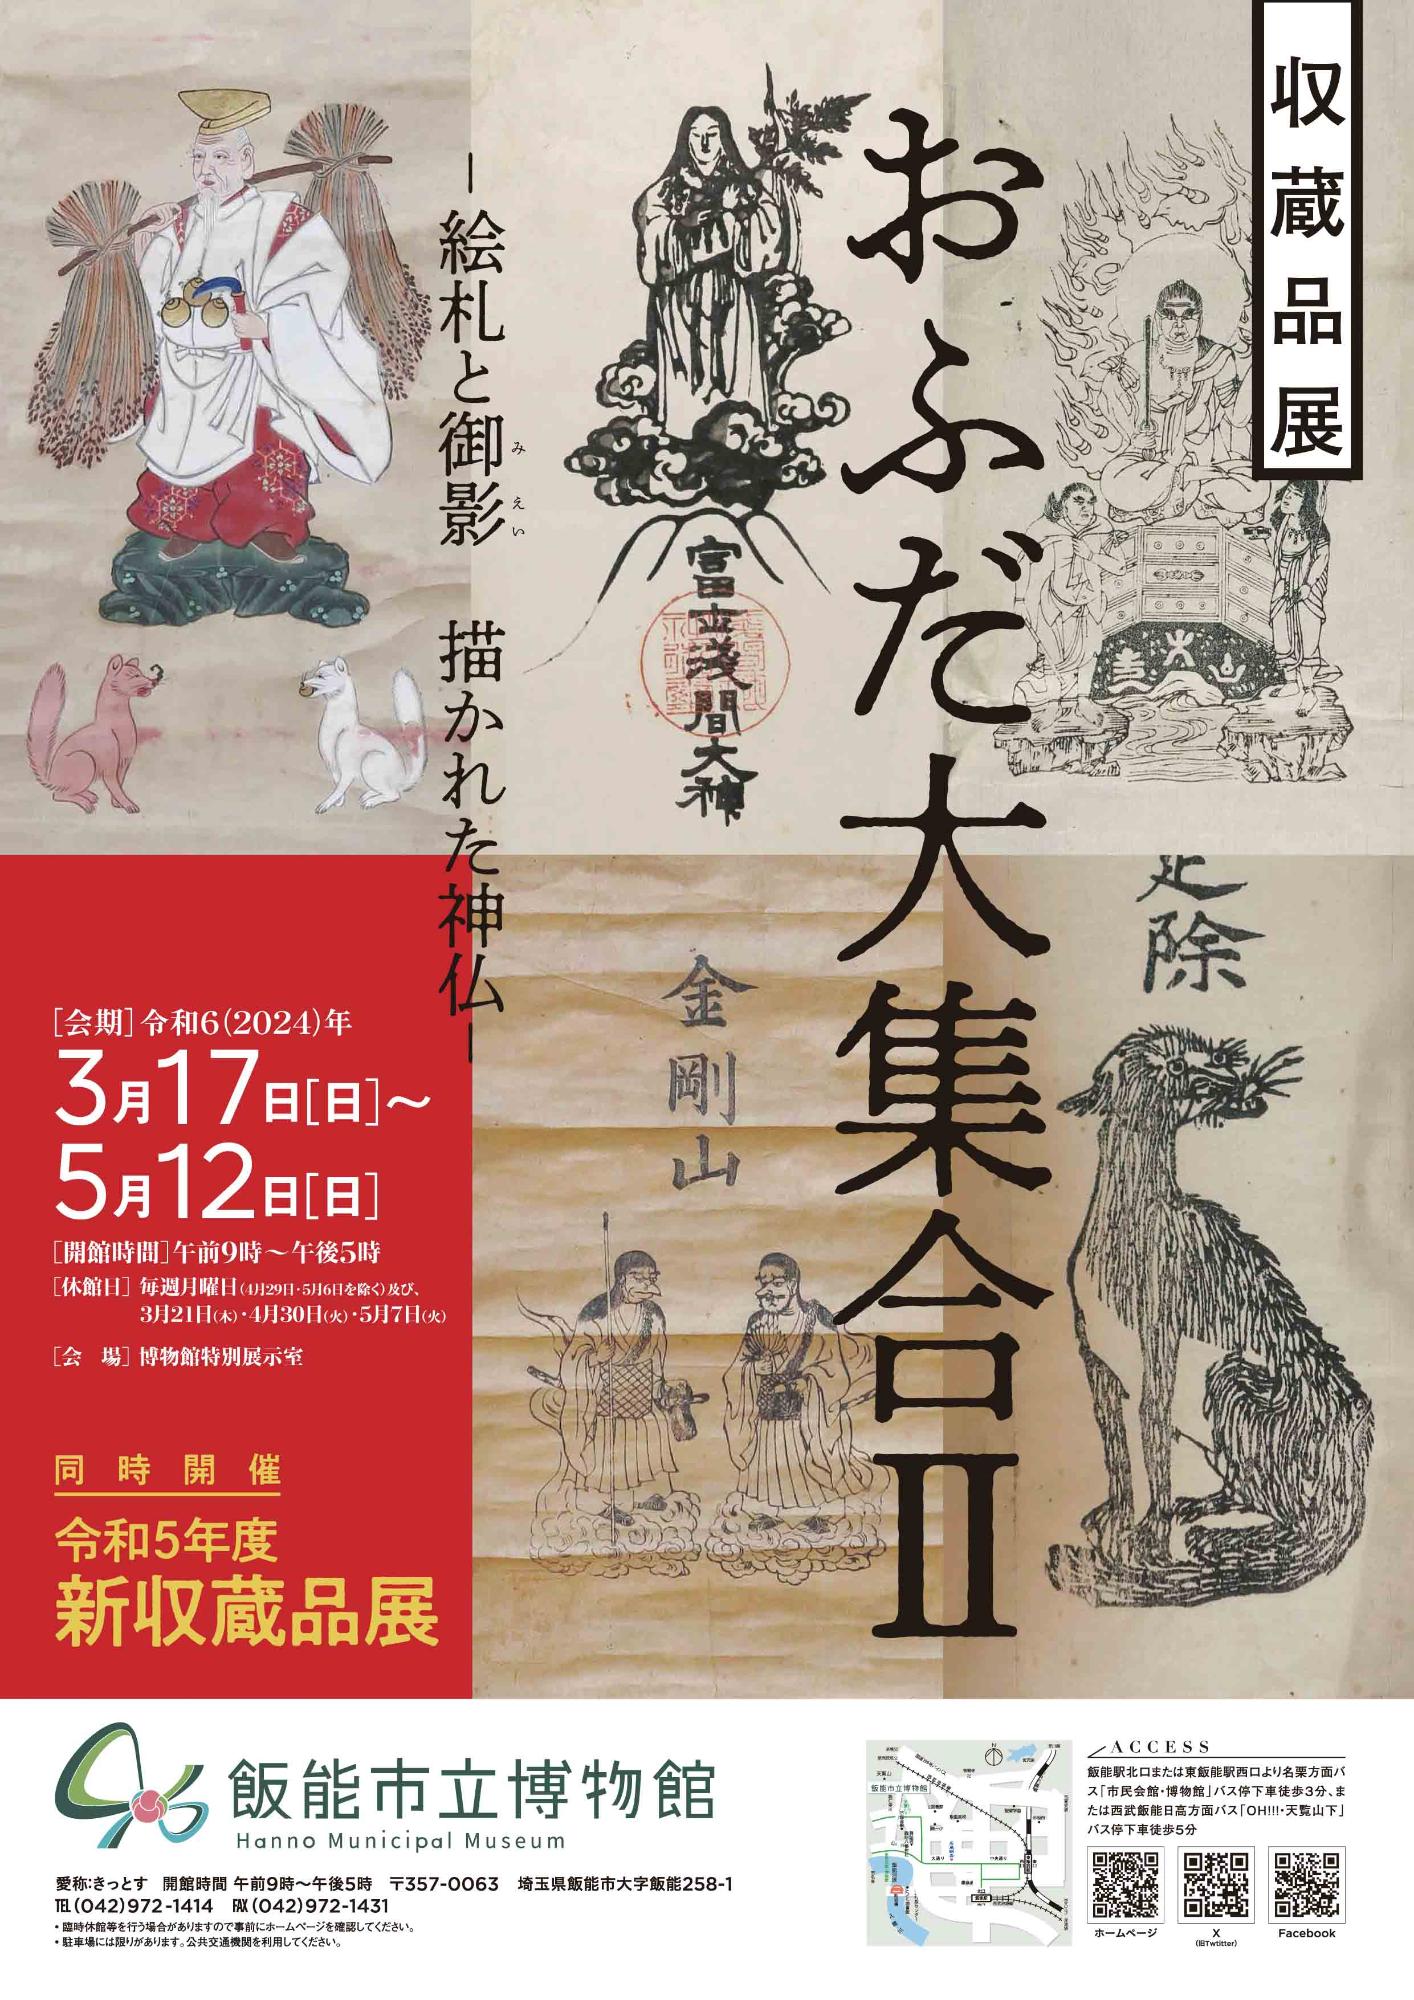 収蔵品展「おふだ大集合!2－絵札と御影 描かれた神仏－」のポスター画像